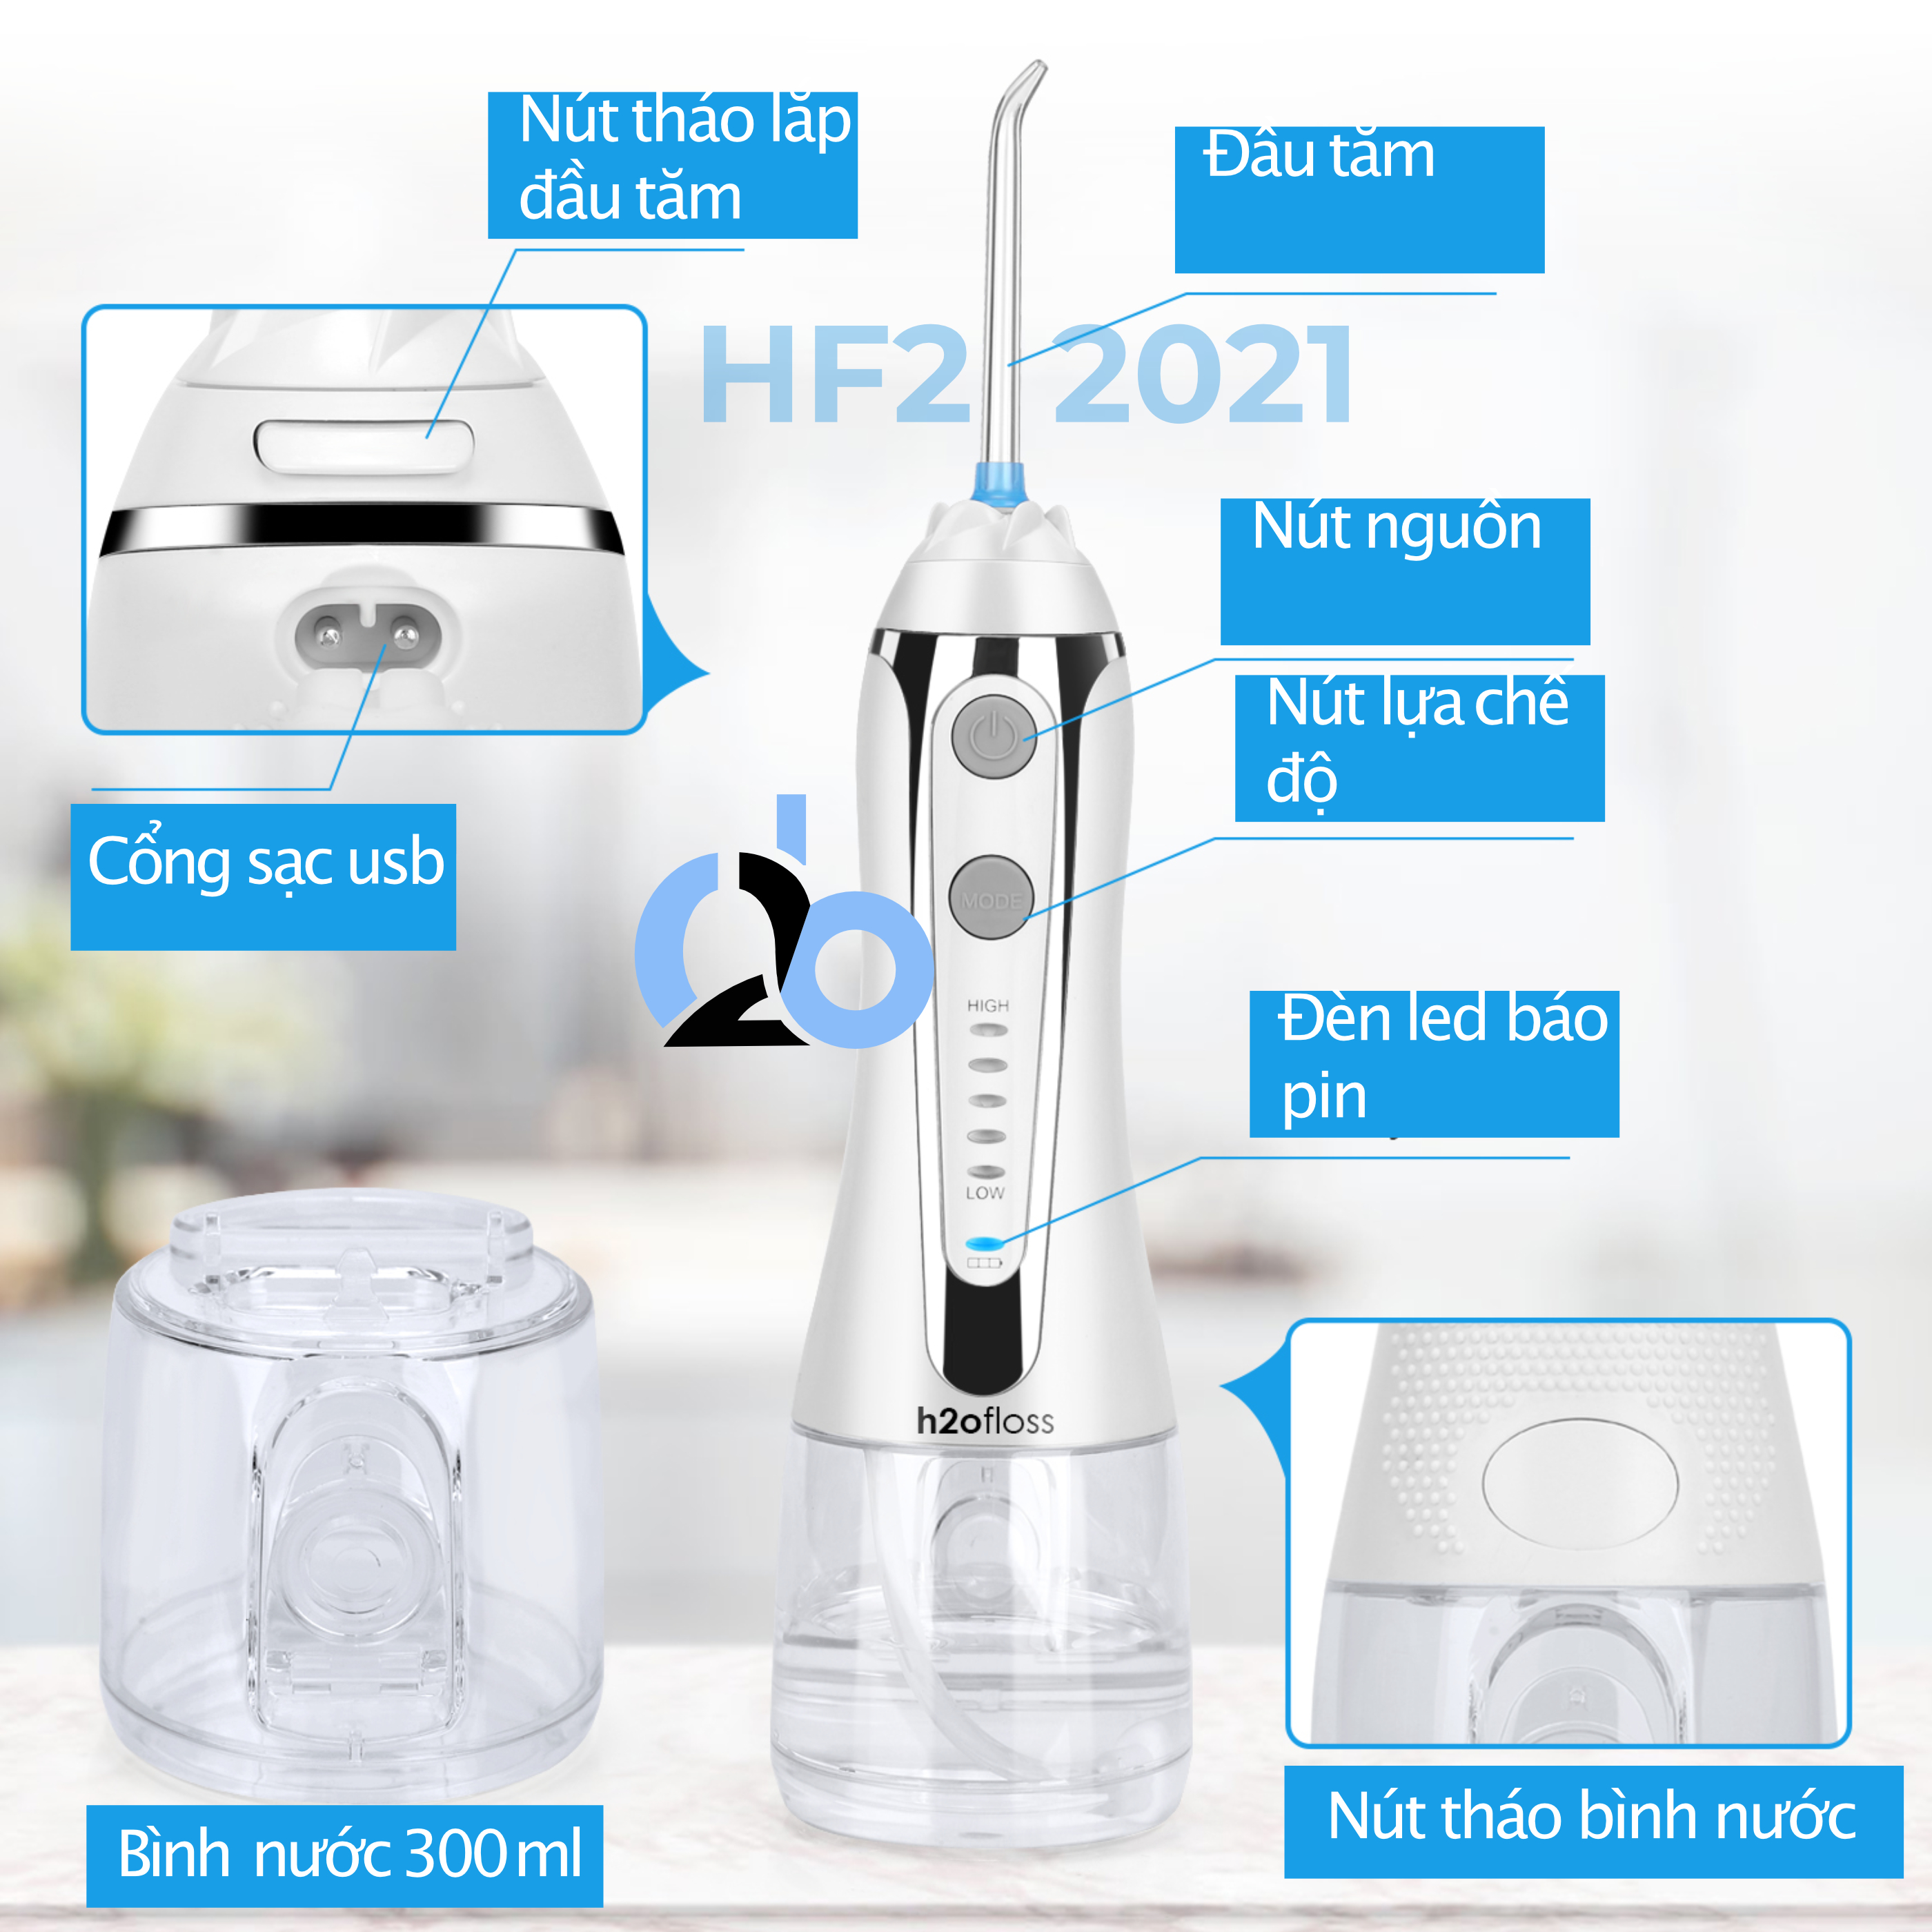 Tăm nước cầm tay H2ofloss HF-2 phiên bản nâng cấp được phân phối độc quyền với nút mở bình nước tiện lợi, tặng kèm 7 đầu tăm, củ sạc nguồn thấp